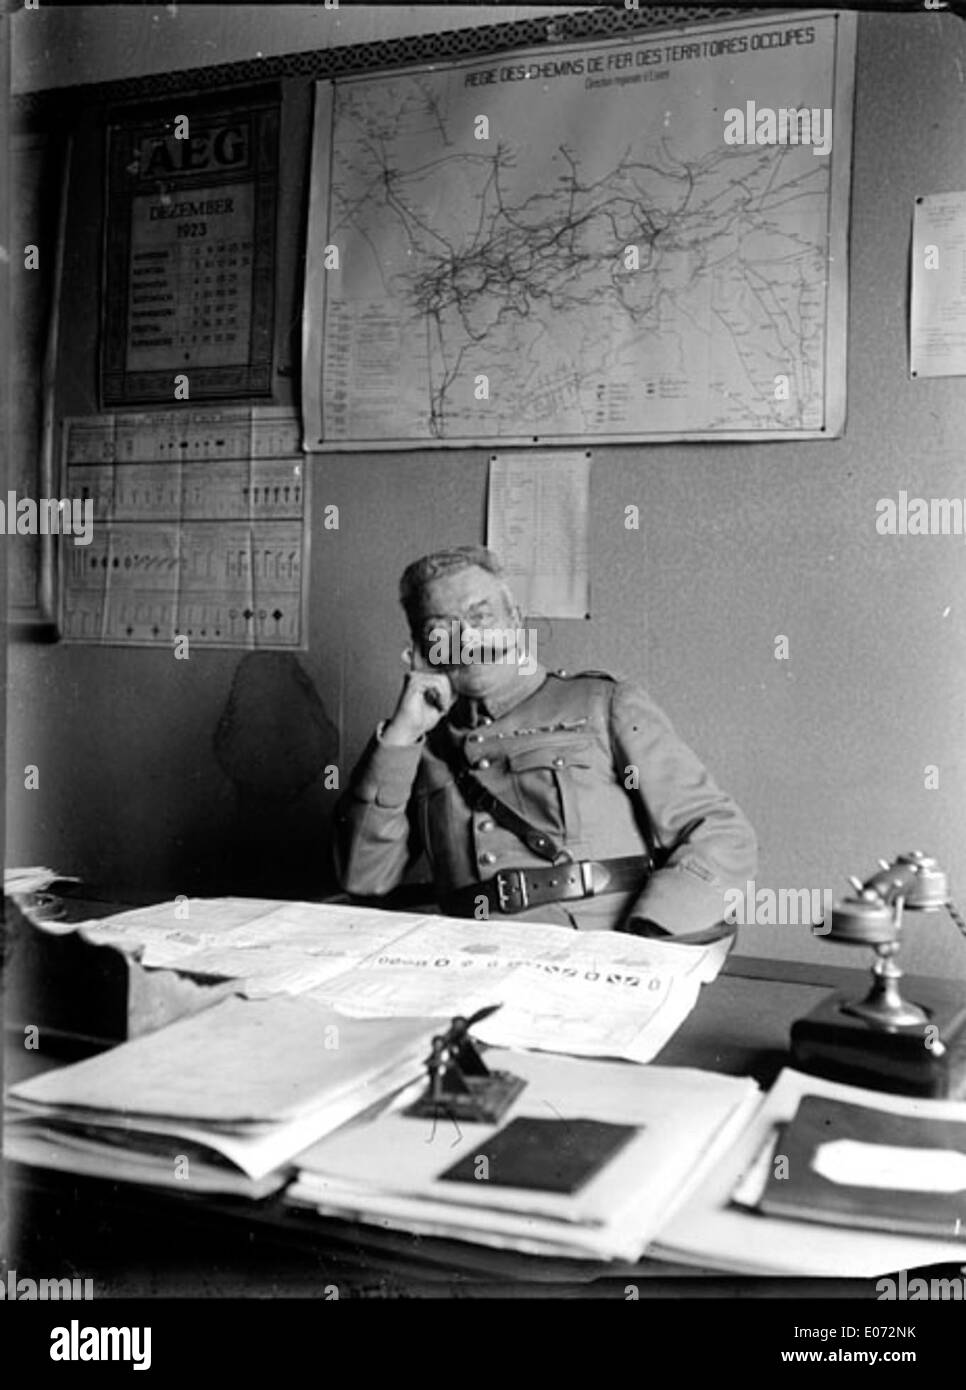 Officier militaire assis à son bureau, Régie des chemins de fer, Essen  (Allemagne), décembre 1923 Stock Photo - Alamy